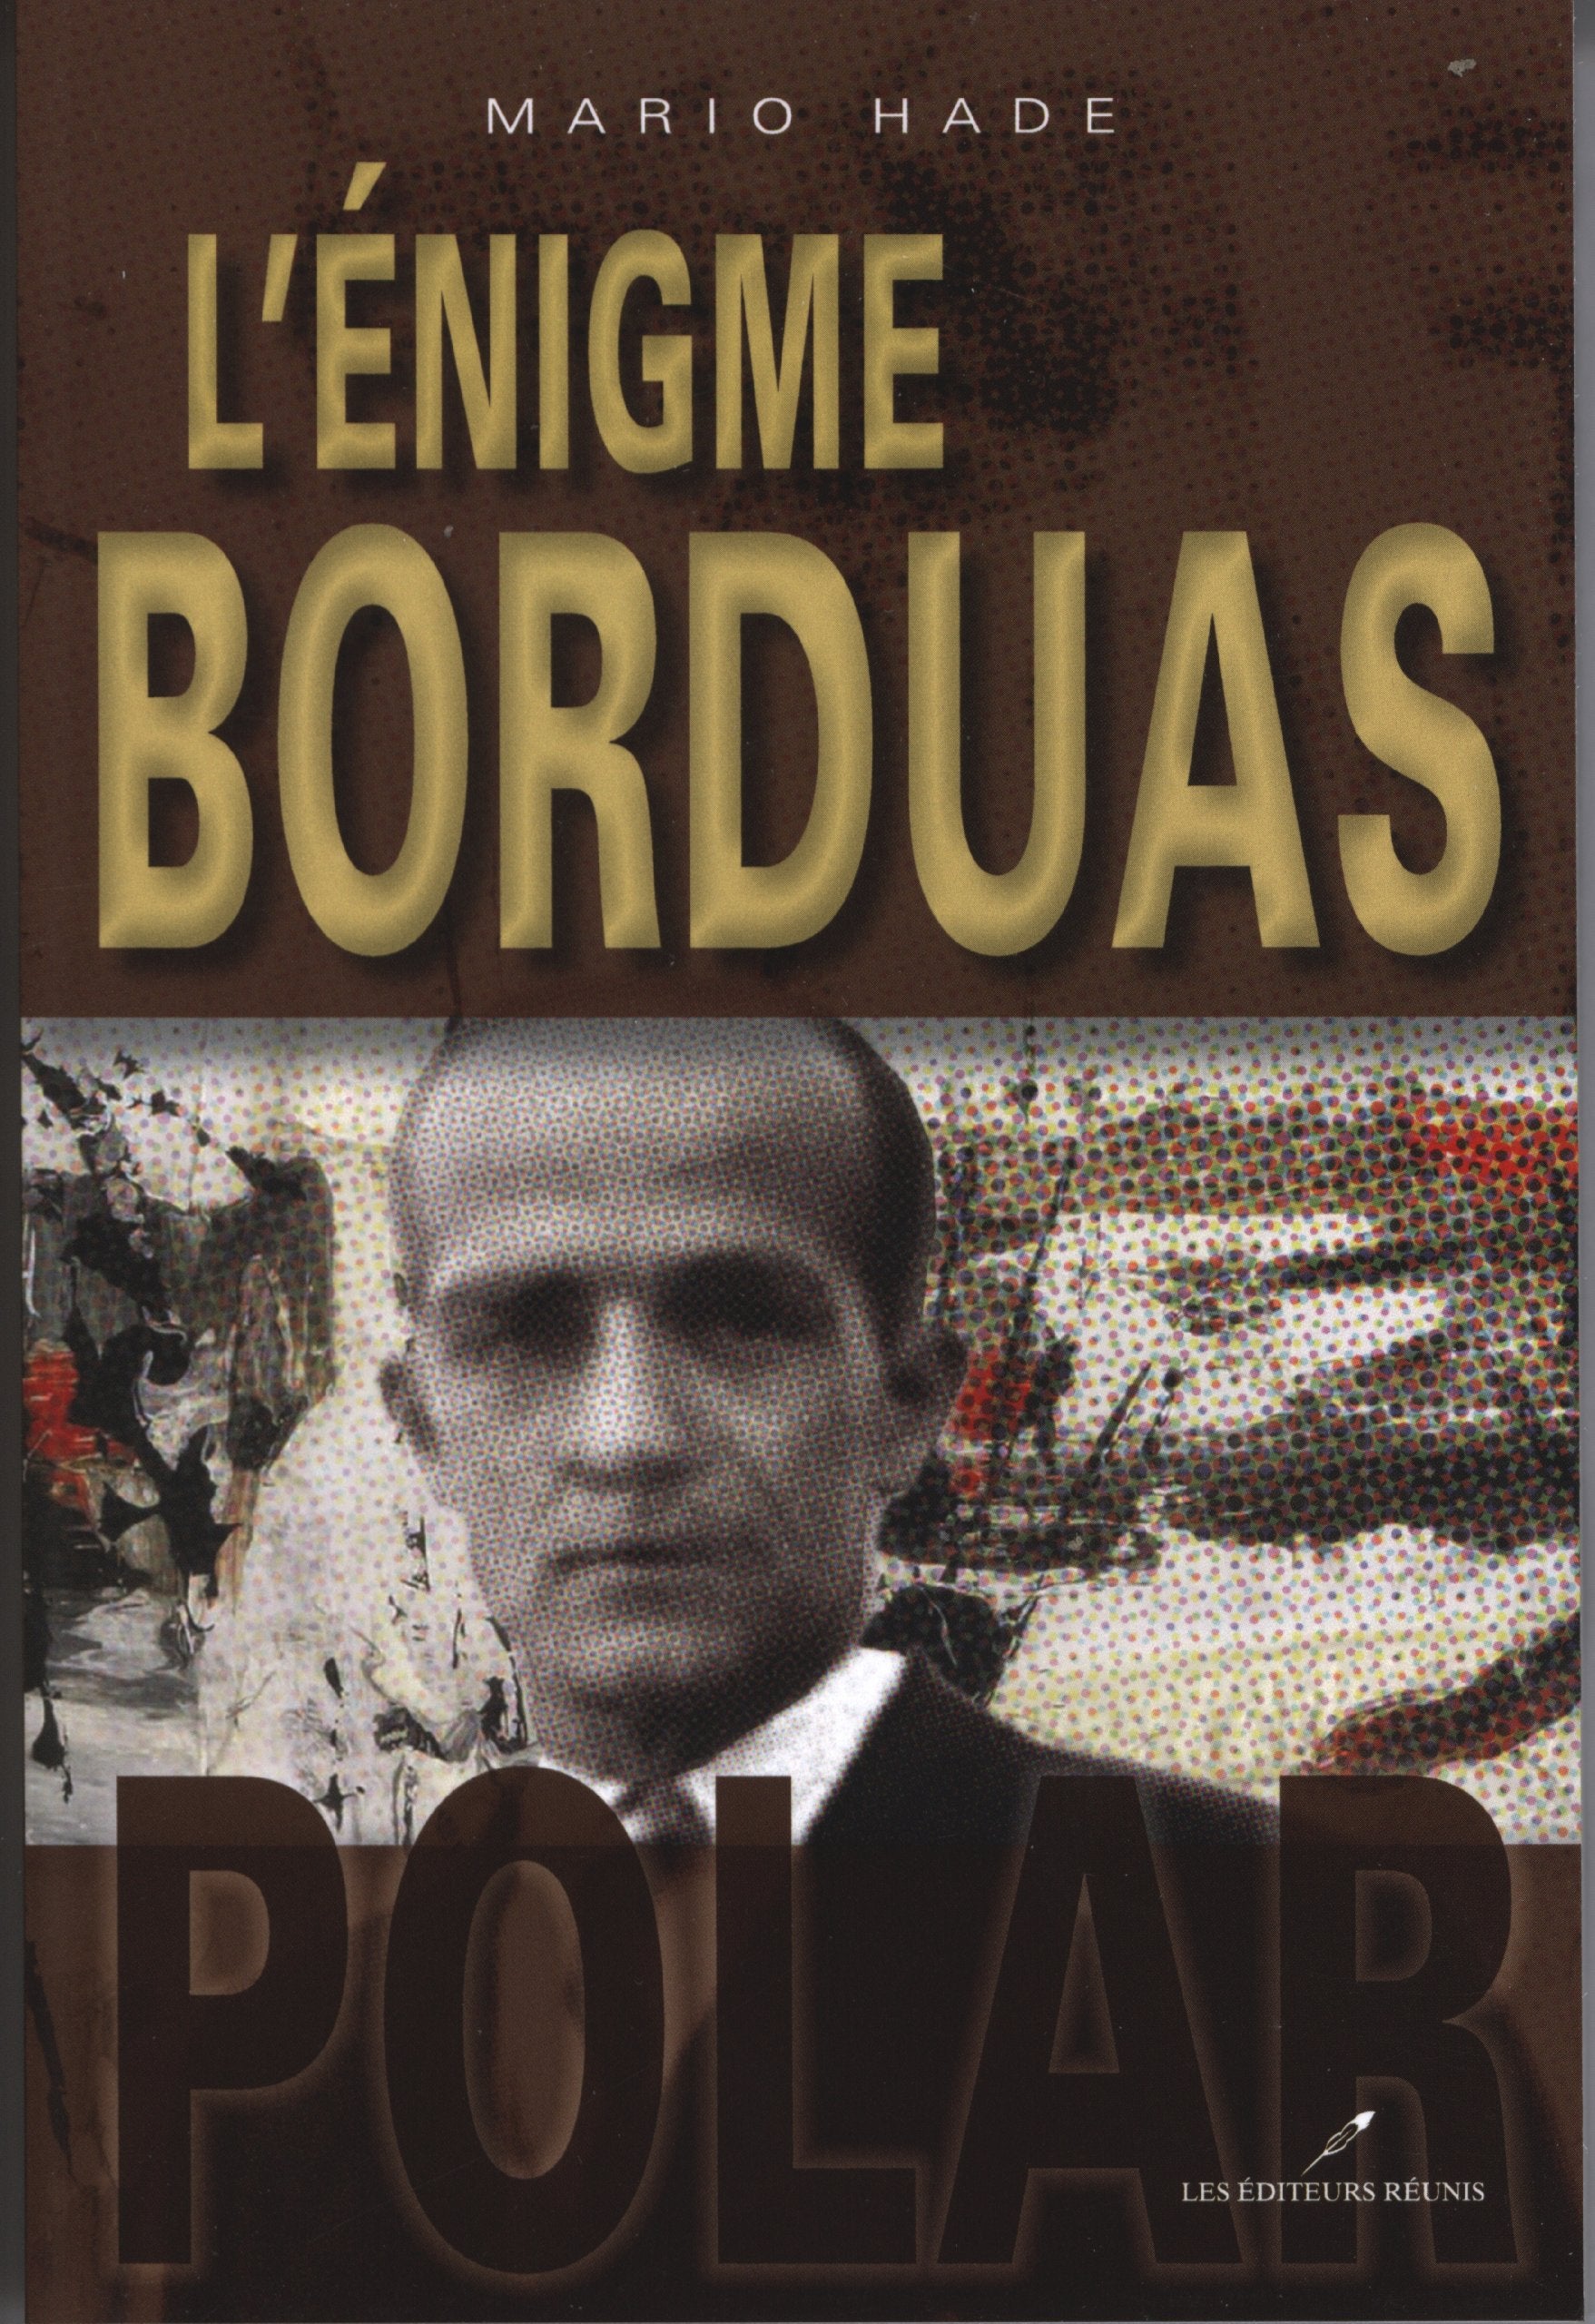 Livre ISBN 2895852170 L'énigme Borduas (Mario Hade)